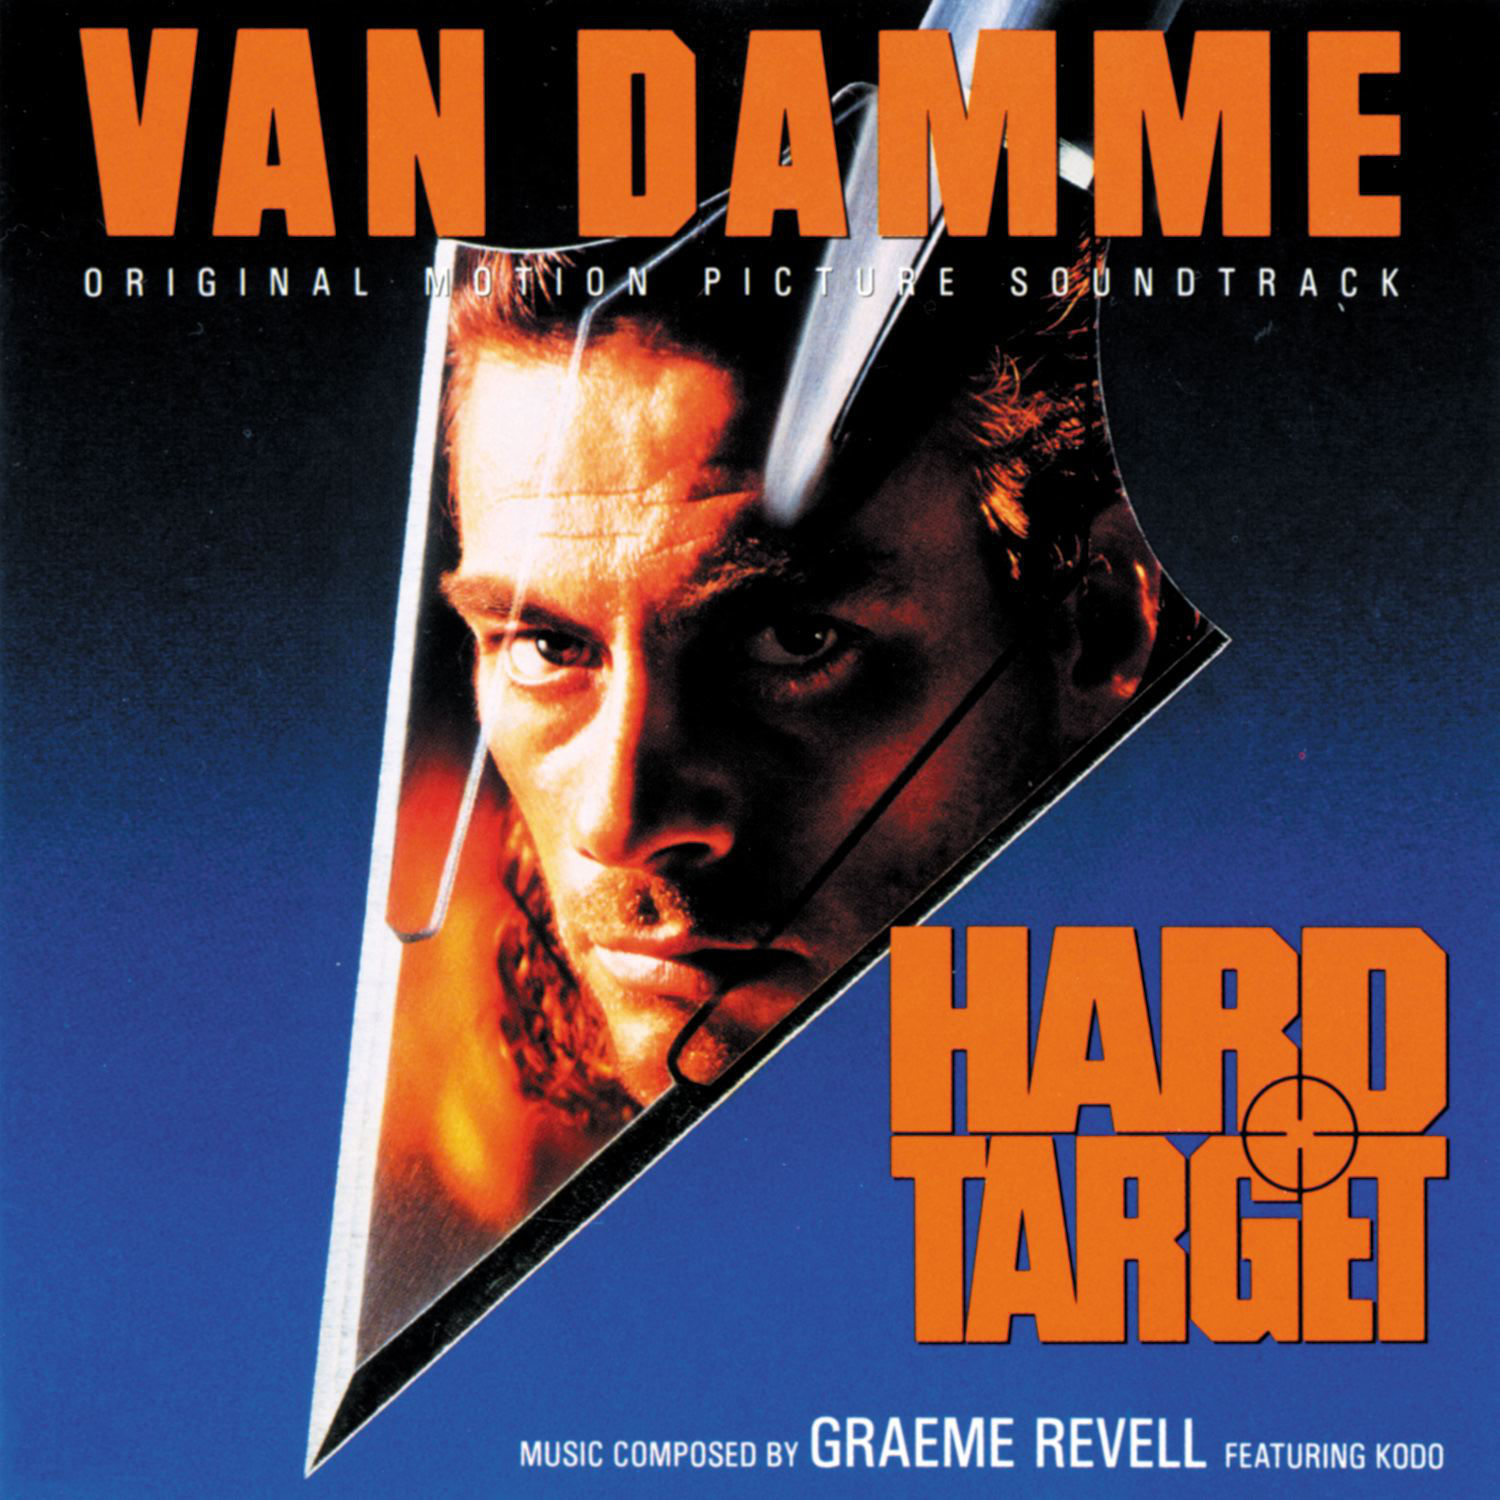 Graeme revell 2. Трудная мишень. Hard target 1993. Graeme Revell. Hard target 1993 Cover.